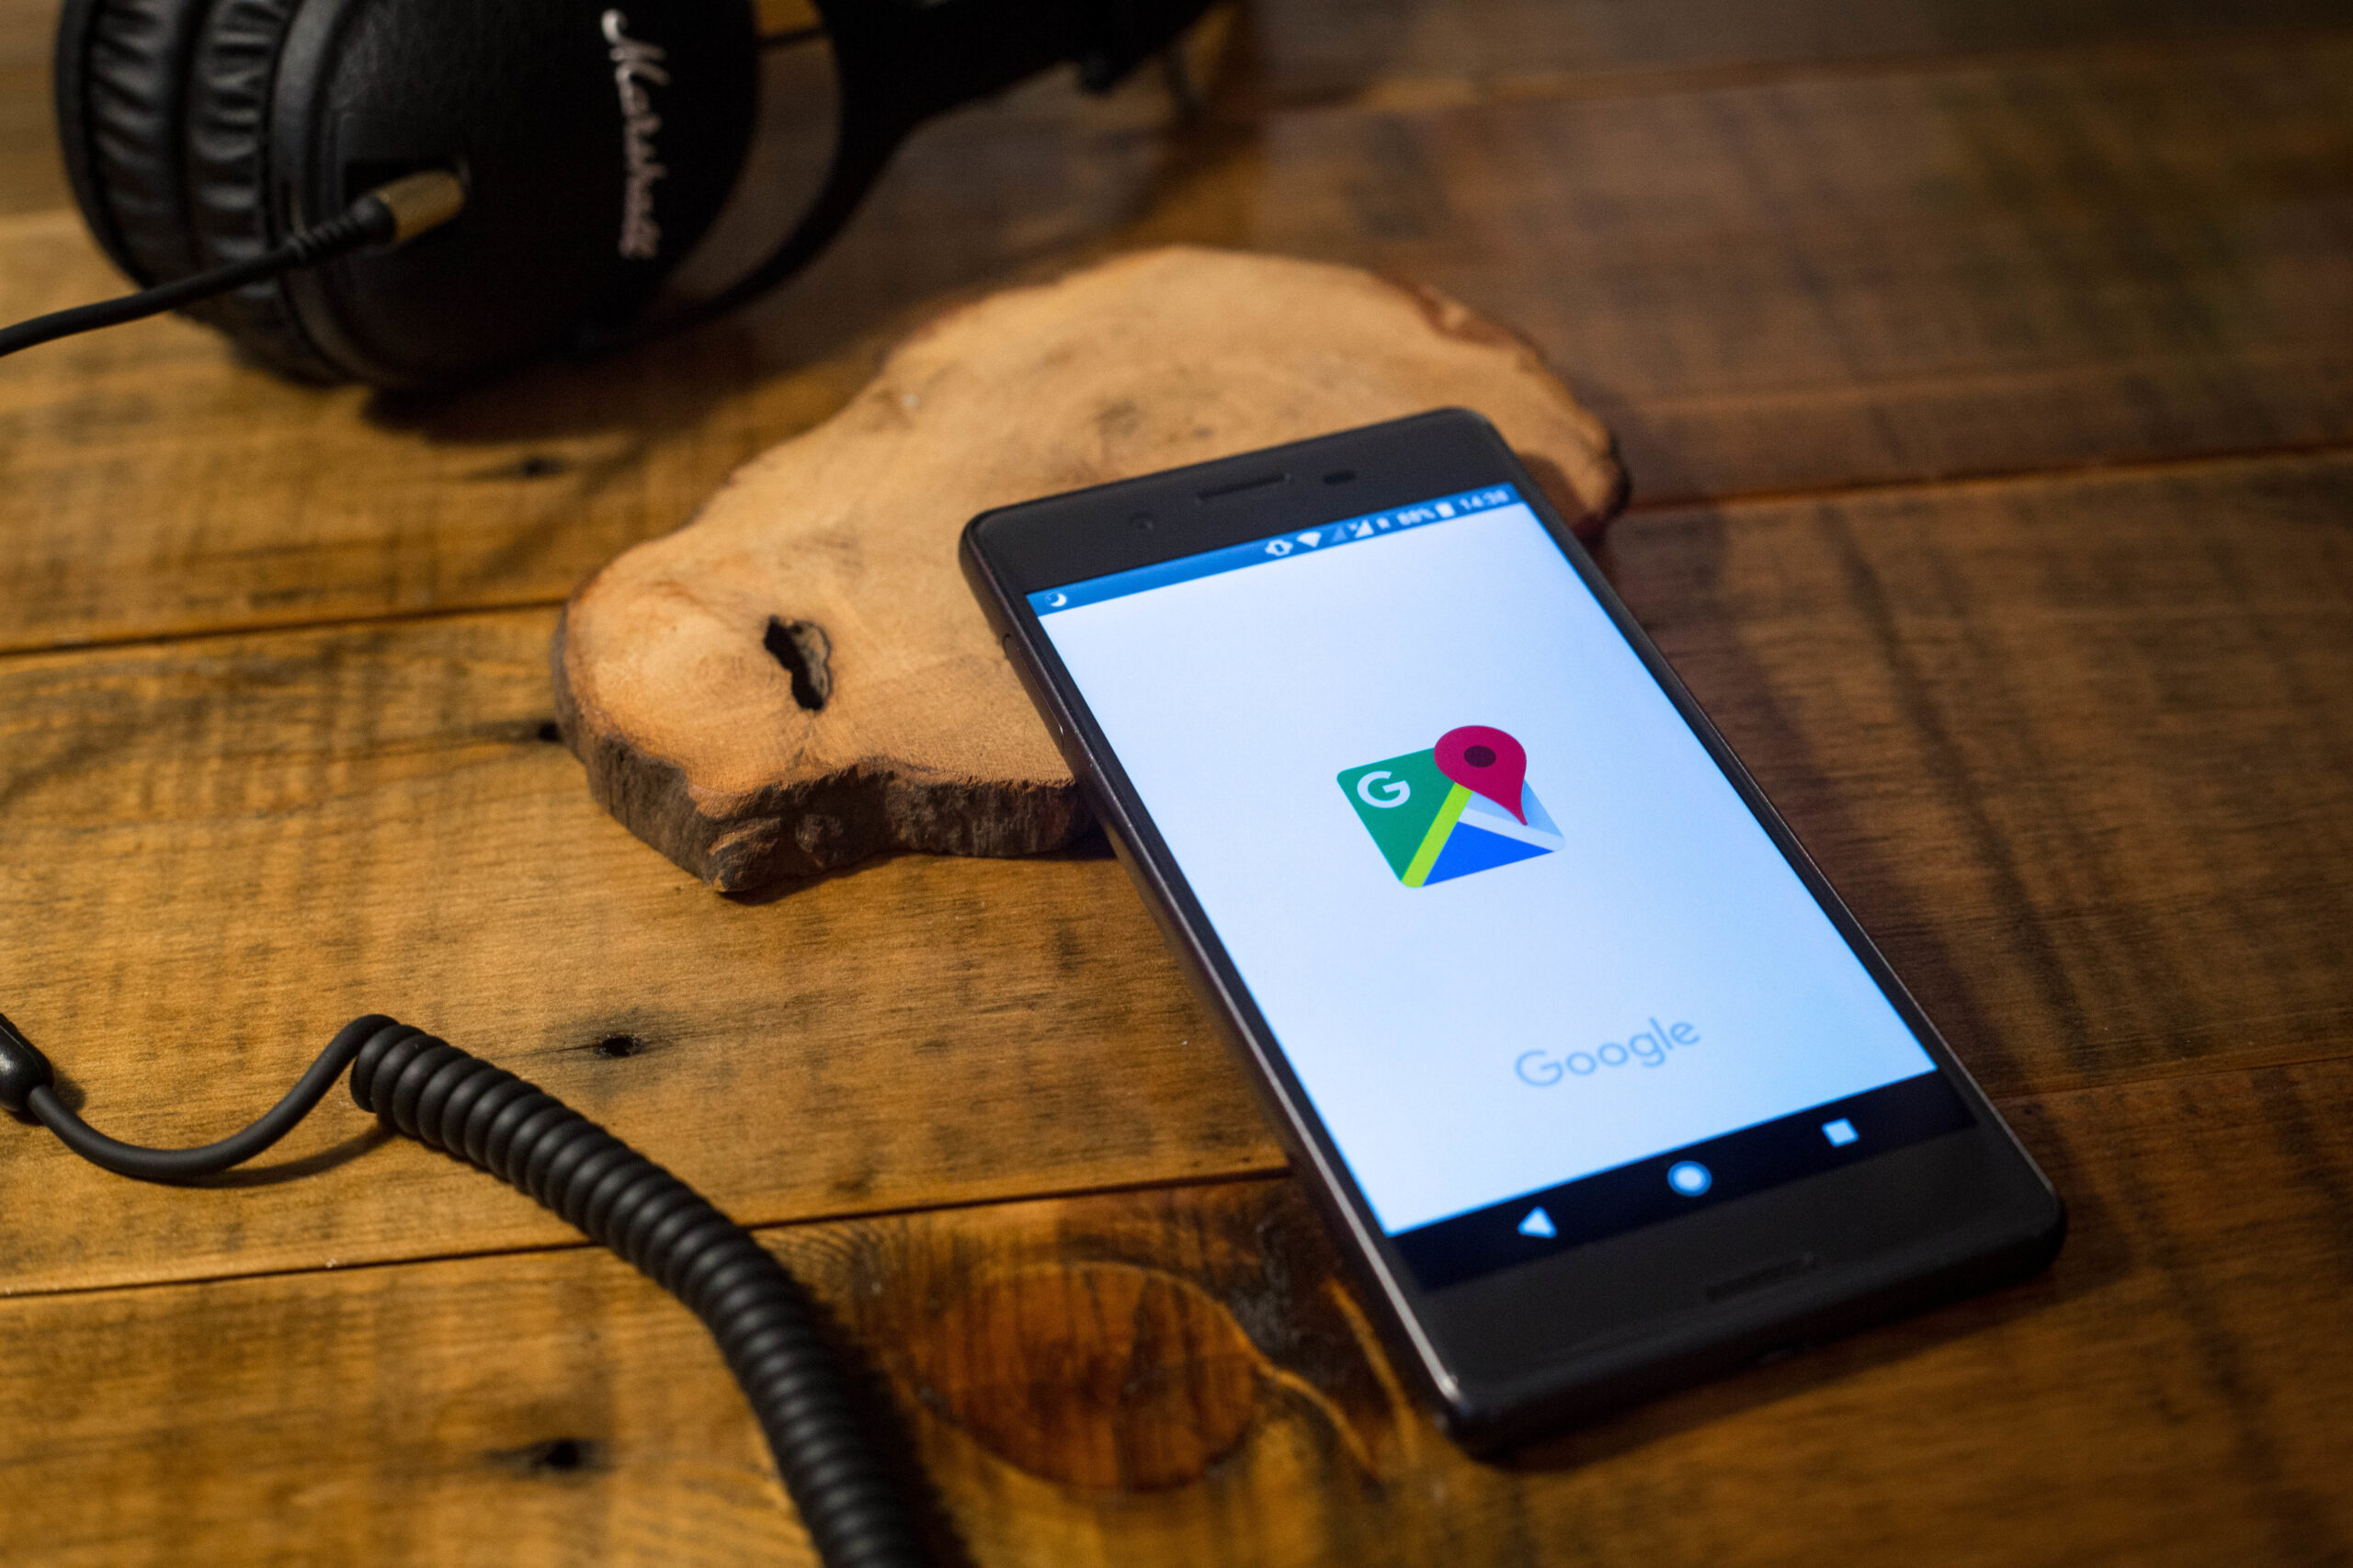 Google sẽ trả cho Arizona 85 triệu đô la vì theo dõi người dùng Android bất hợp pháp